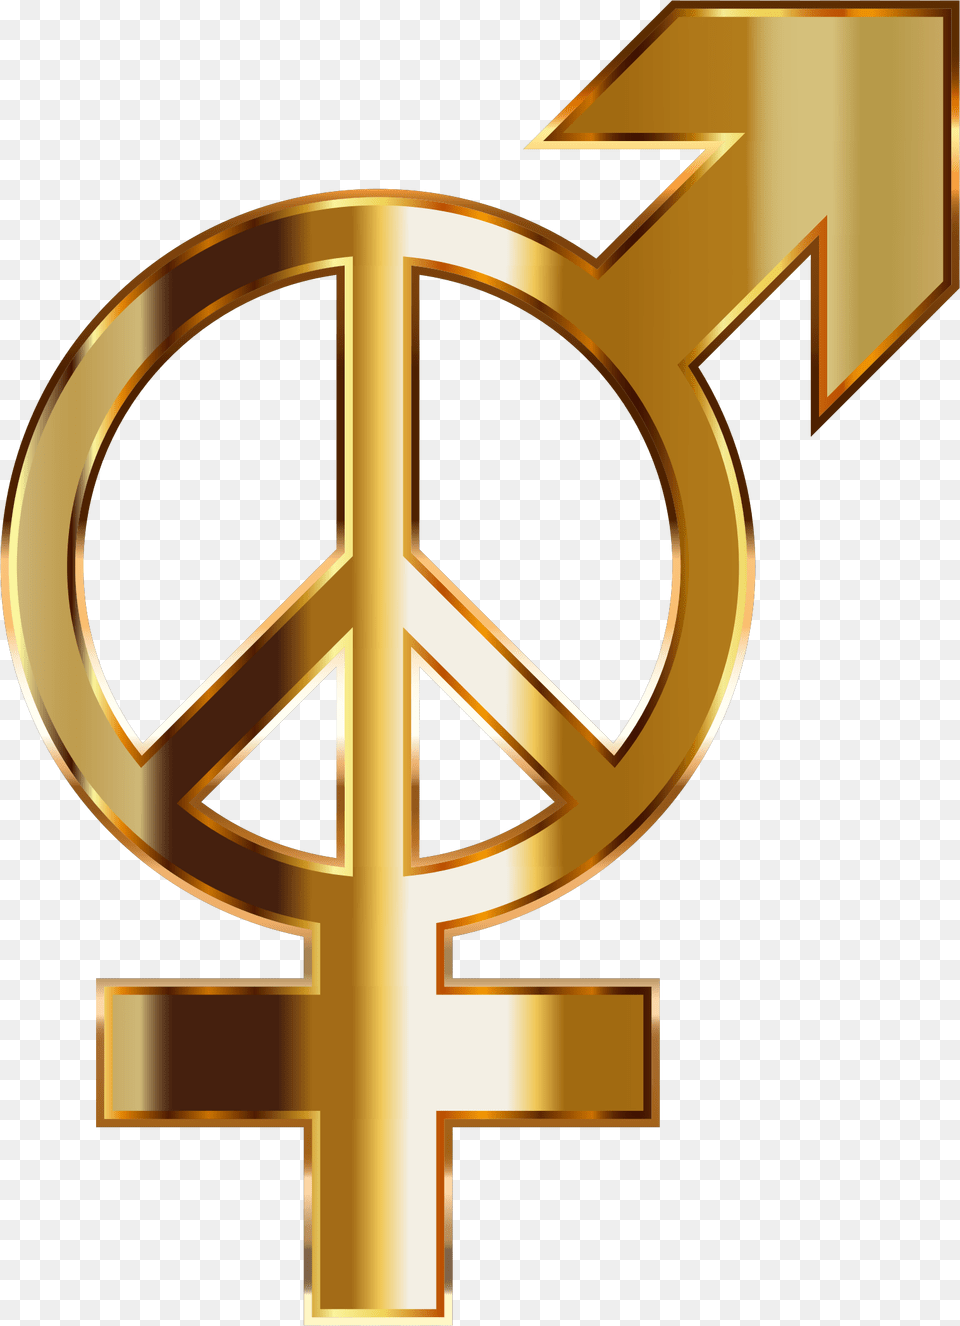 Peace Symbol Clipart 26 Buy Clip Art Gold Gender Symbols Transparent Background Png Image